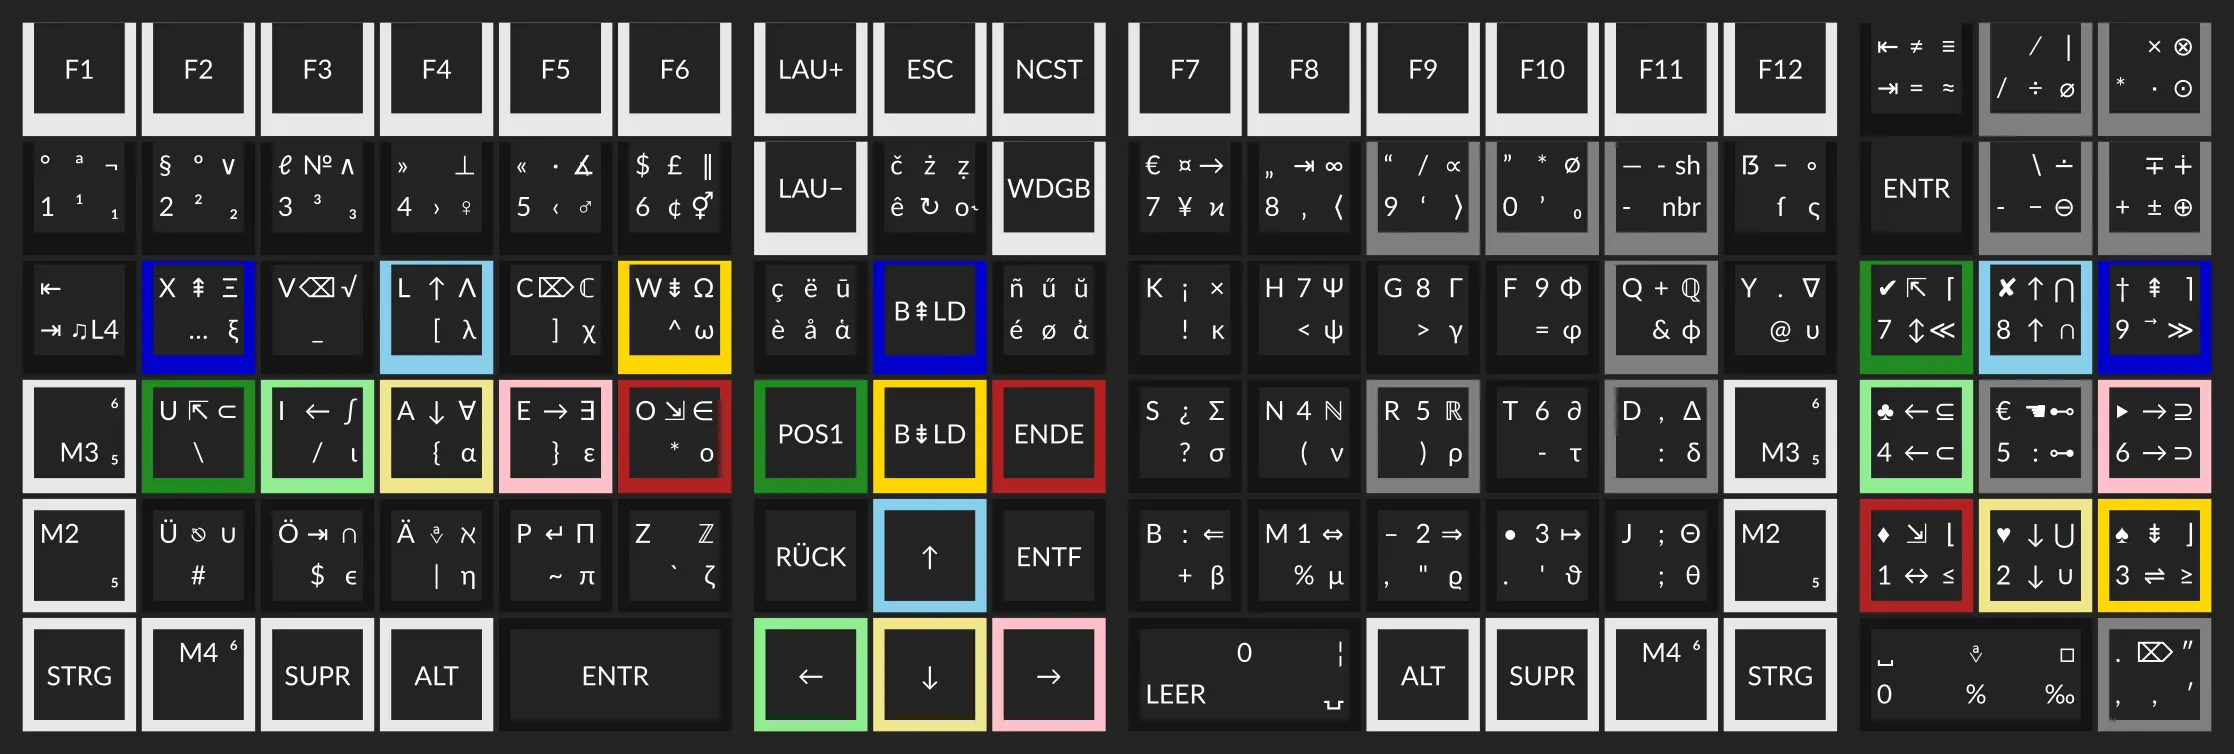 Modell der Columna Tastatur mit Beschriftung für die sechs Ebenen des Neo Layouts.